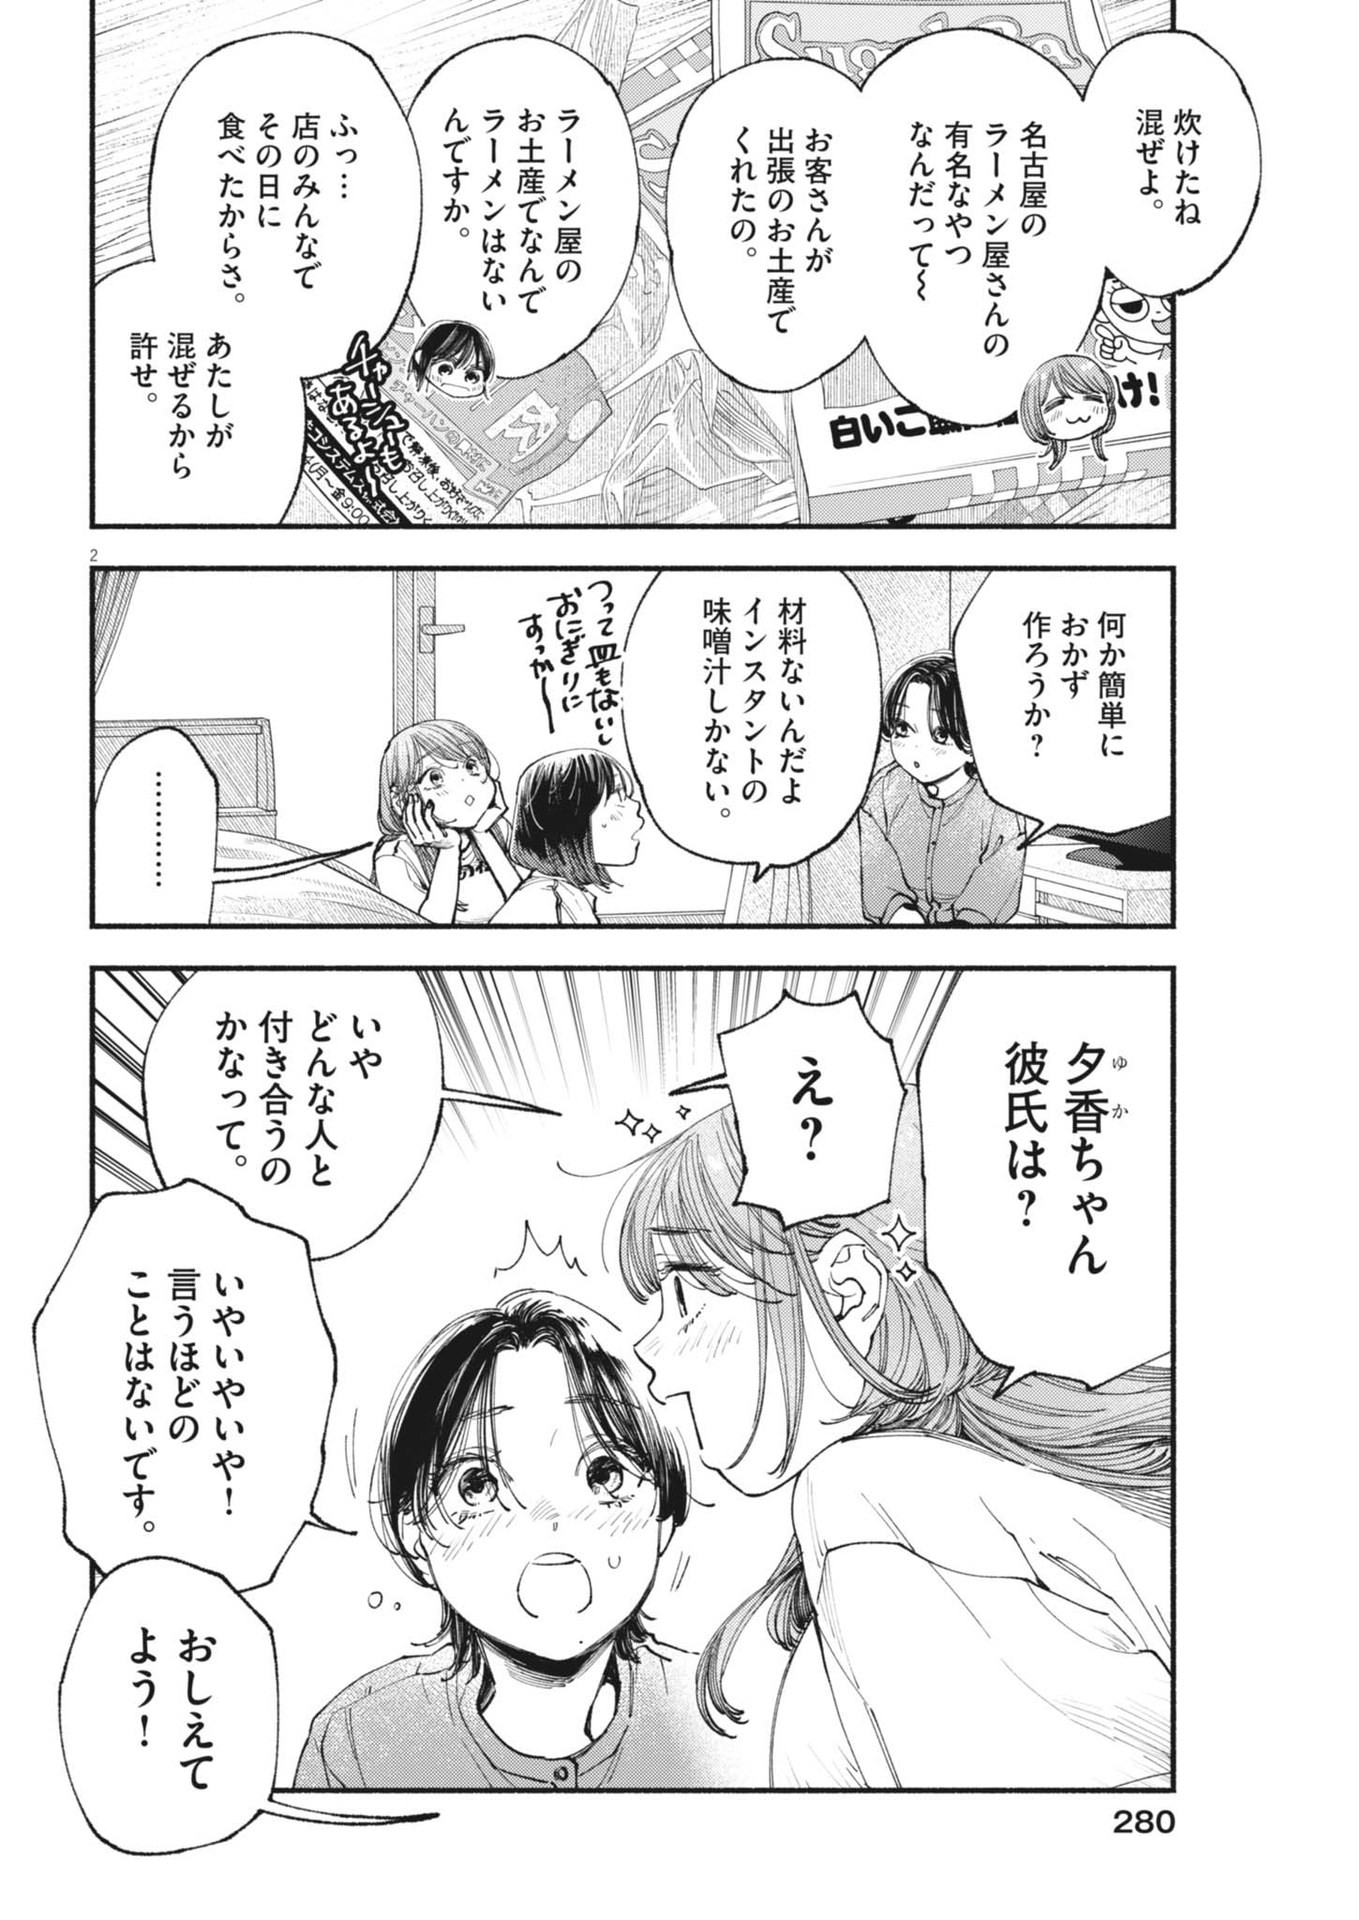 Konoyo wa Tatakau Kachi ga Aru  - Chapter 26 - Page 2